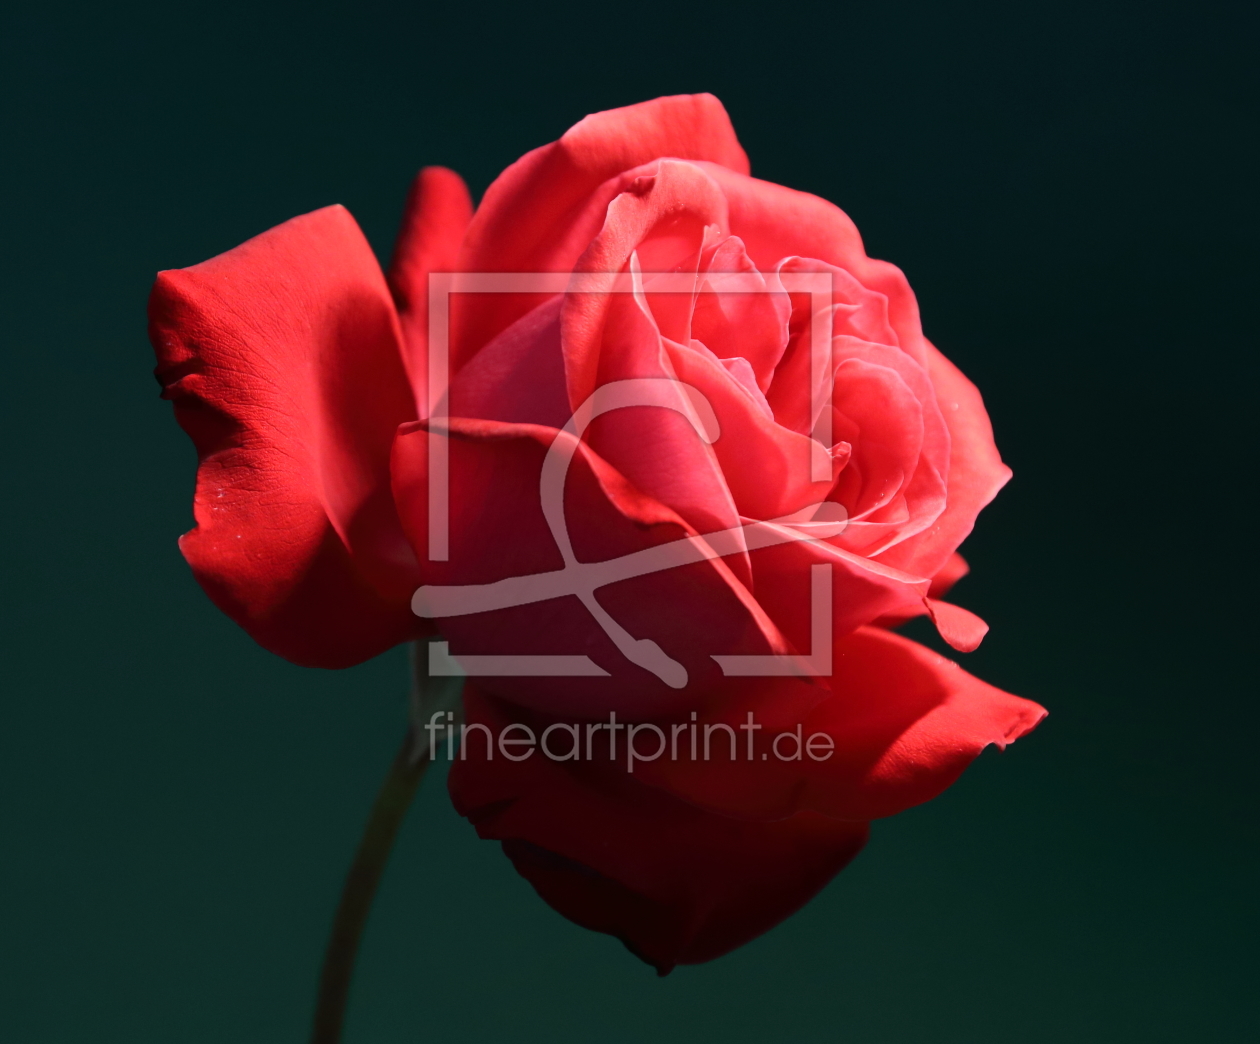 Bild-Nr.: 11521881 Rose auf schwarzem Grund Makro erstellt von Maxbenno